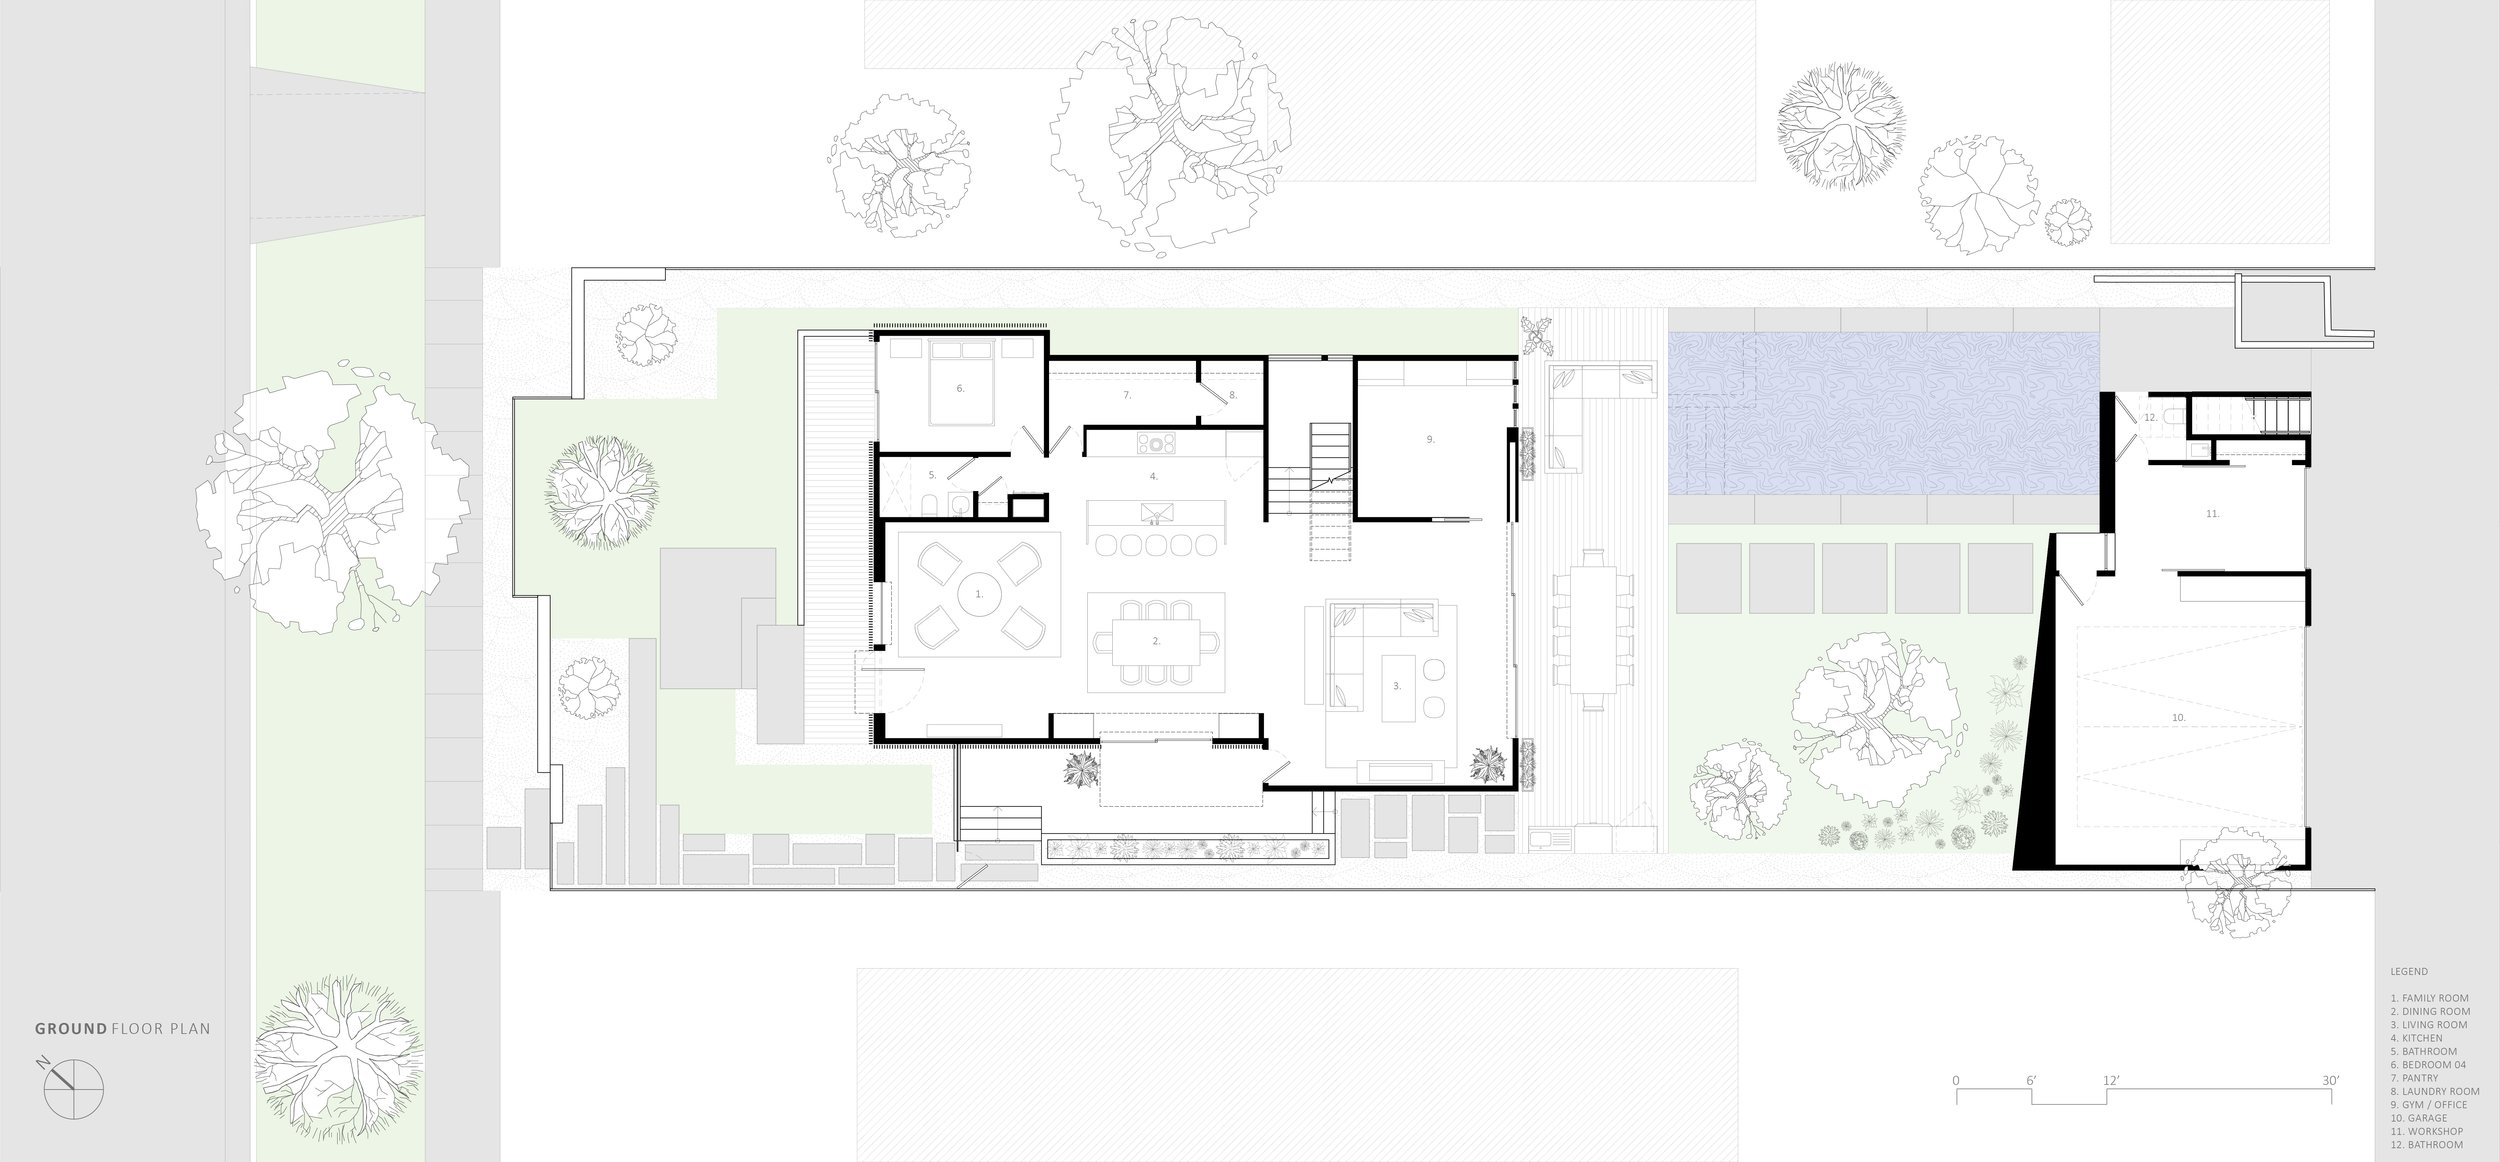 bspk-design-architecture-california-4100-residenital-cnb-house-ground level floor plan.jpg